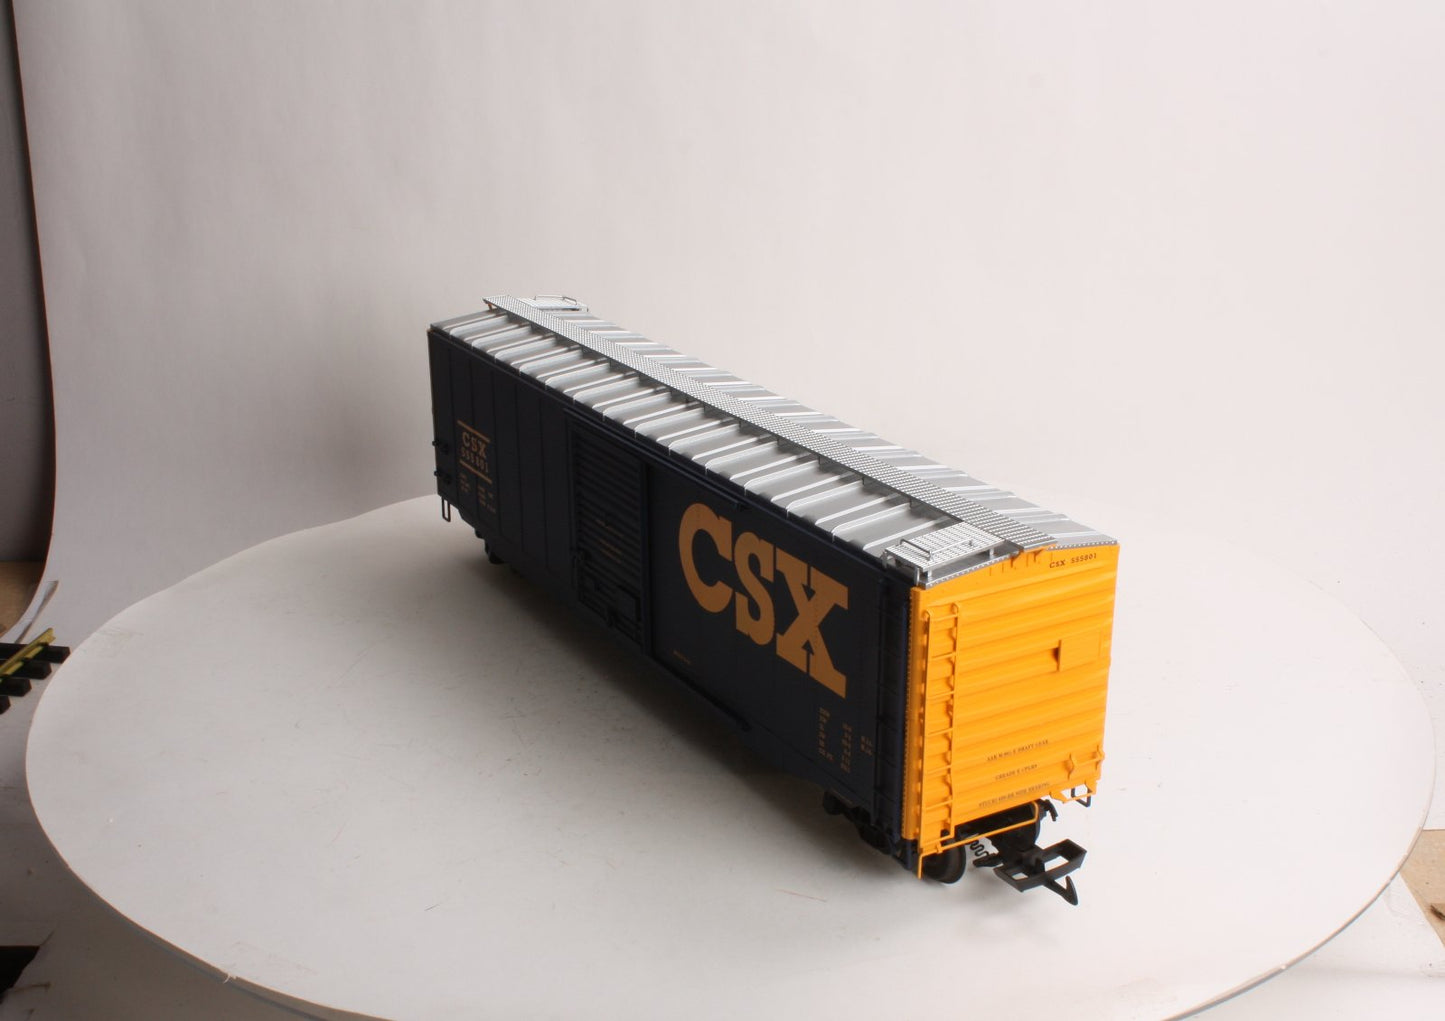 USA Trains R19308A G CSX 50' Boxcar #555801